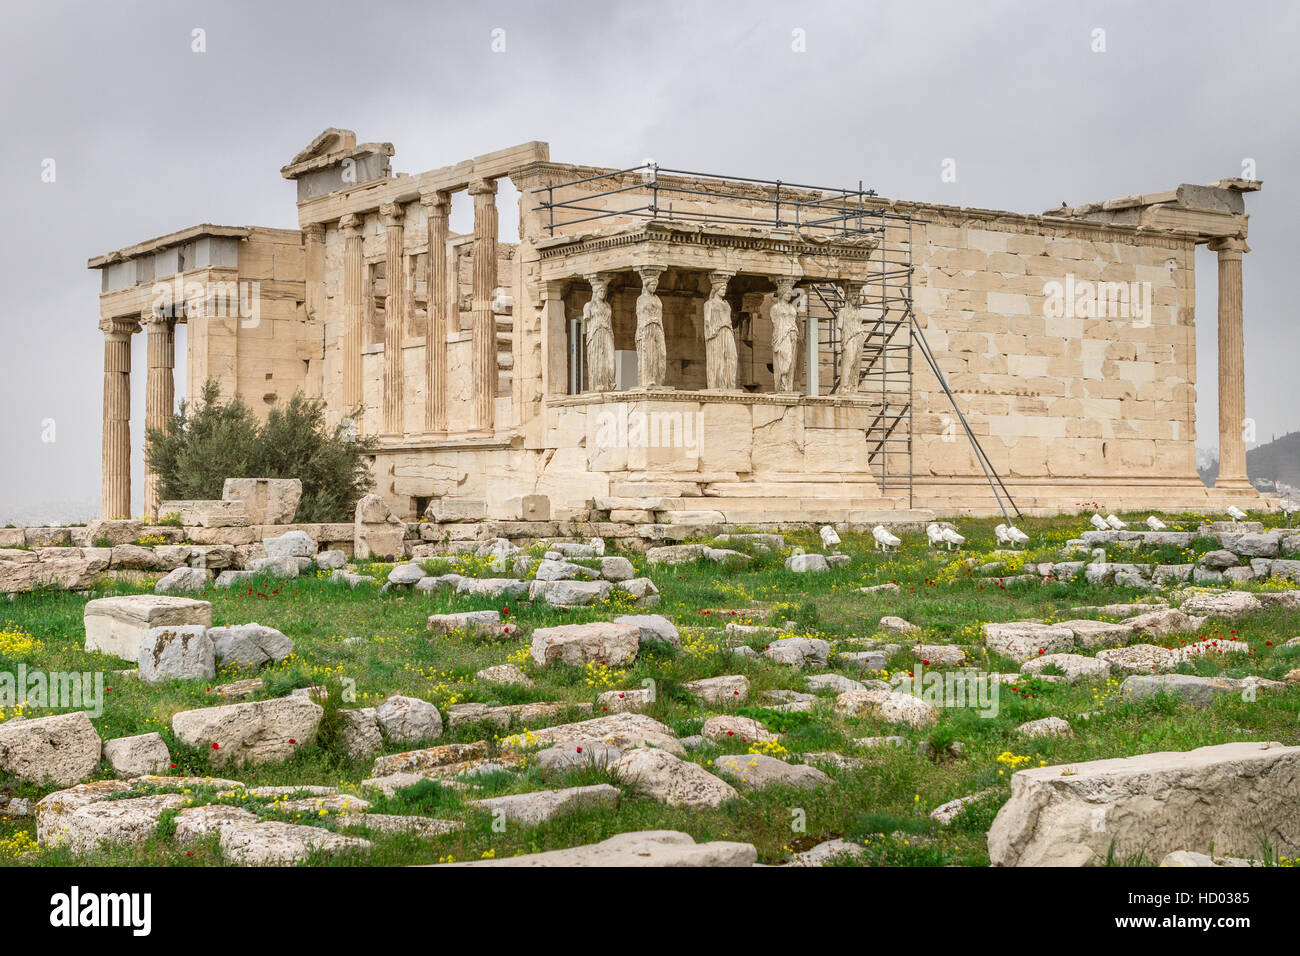 Athènes, Grèce - cariatides à l'Erechtheum du Parthénon à Athènes Grèce Erechtheion Banque D'Images